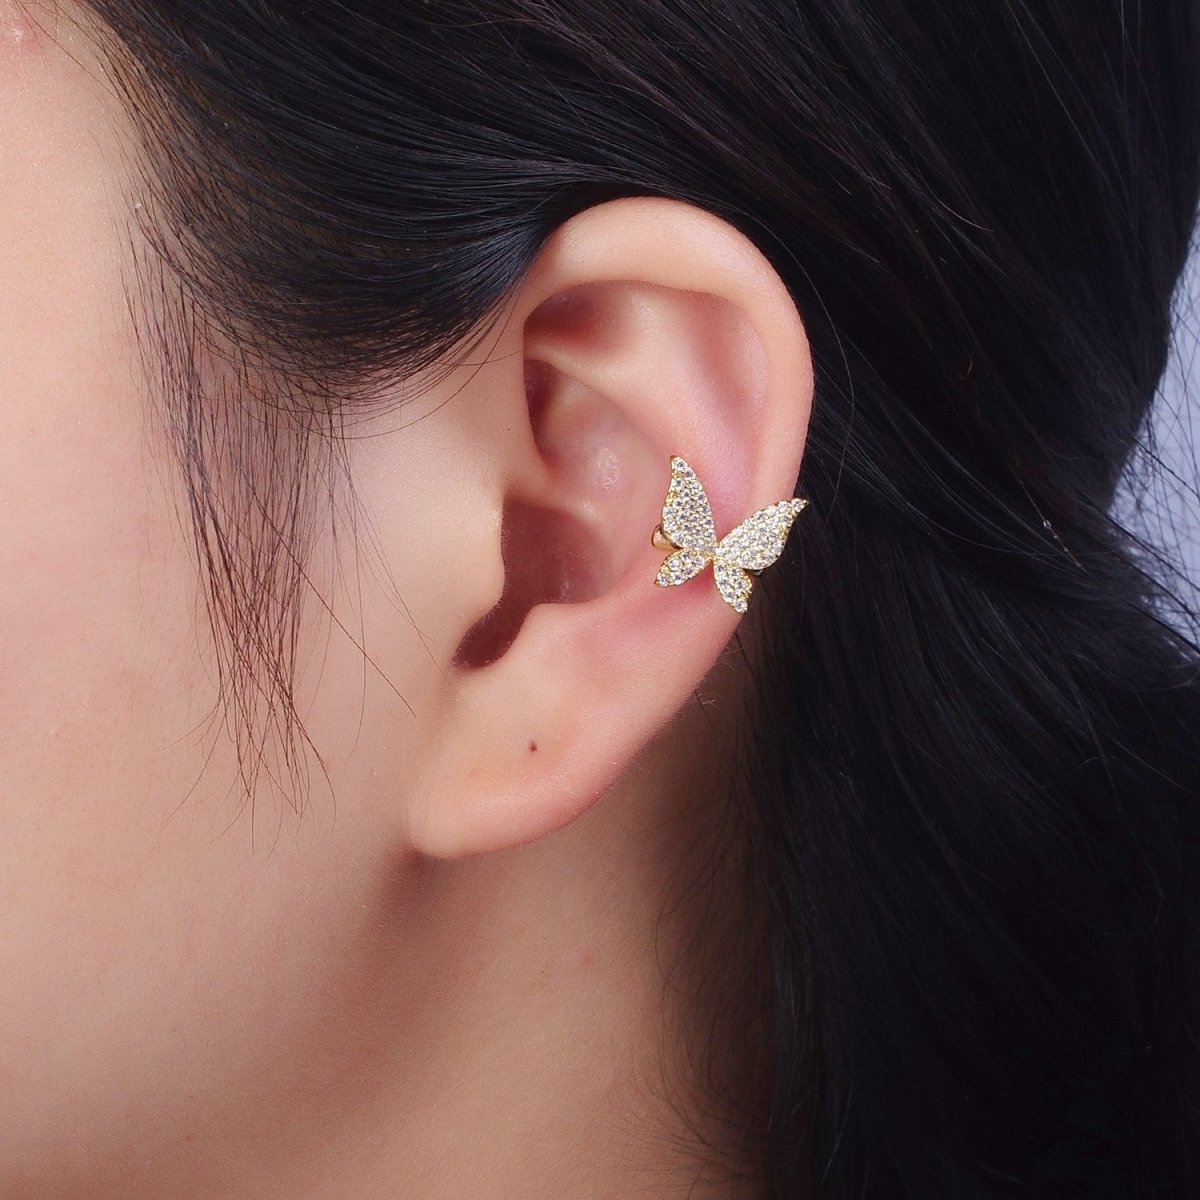 Butterfly Ear Cuff Earrings, Cute Butterfly Earrings With Micro Pave Cubic Zirconia Gold Animal Earrings, Minimalist Jewelry Y-069 - DLUXCA